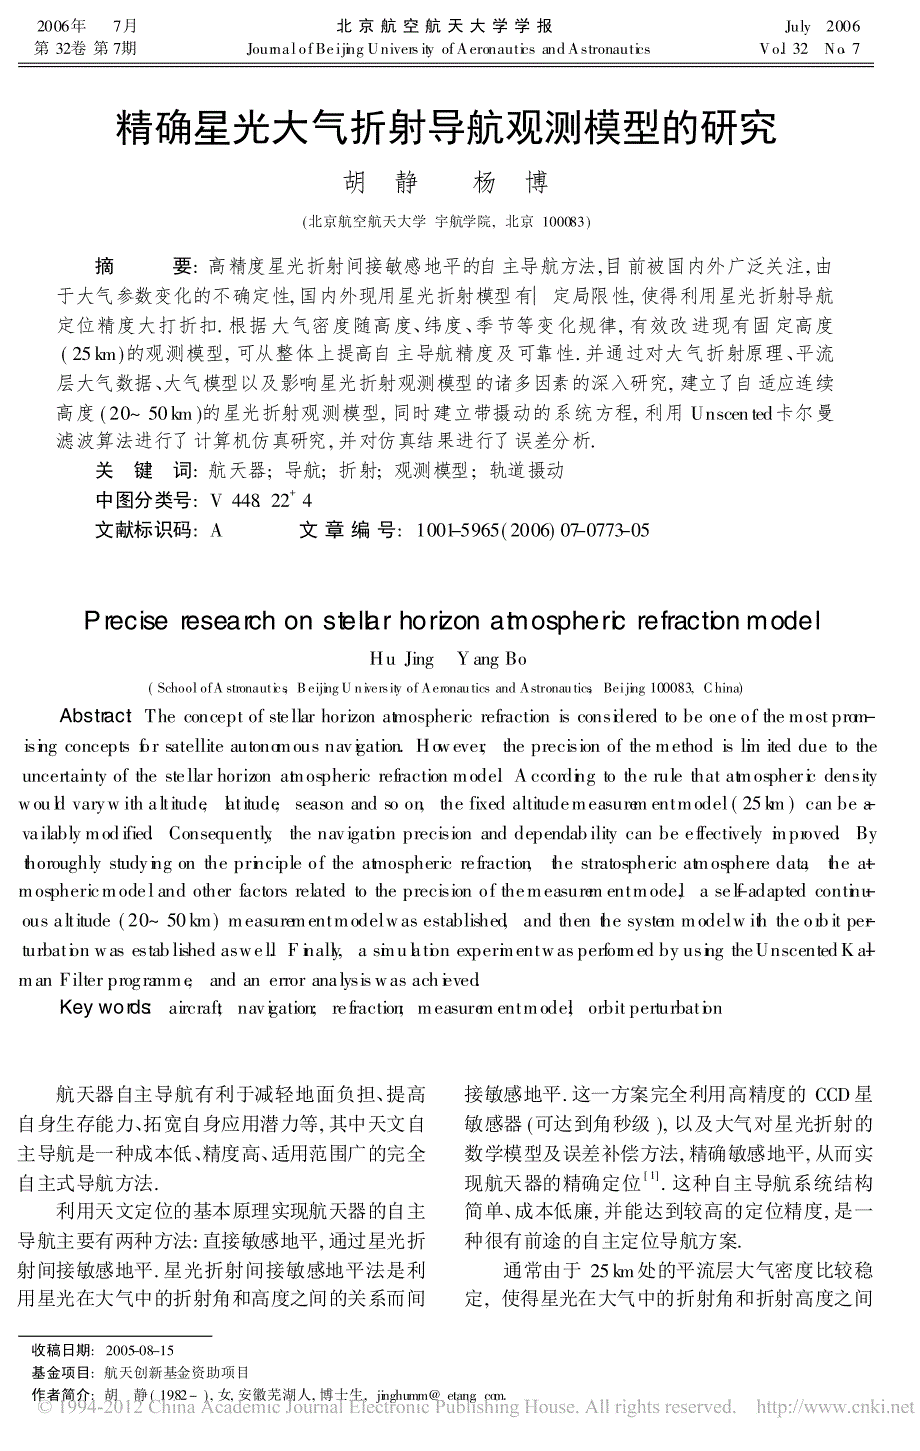 精确星光大气折射导航观测模型的研究胡静_第1页